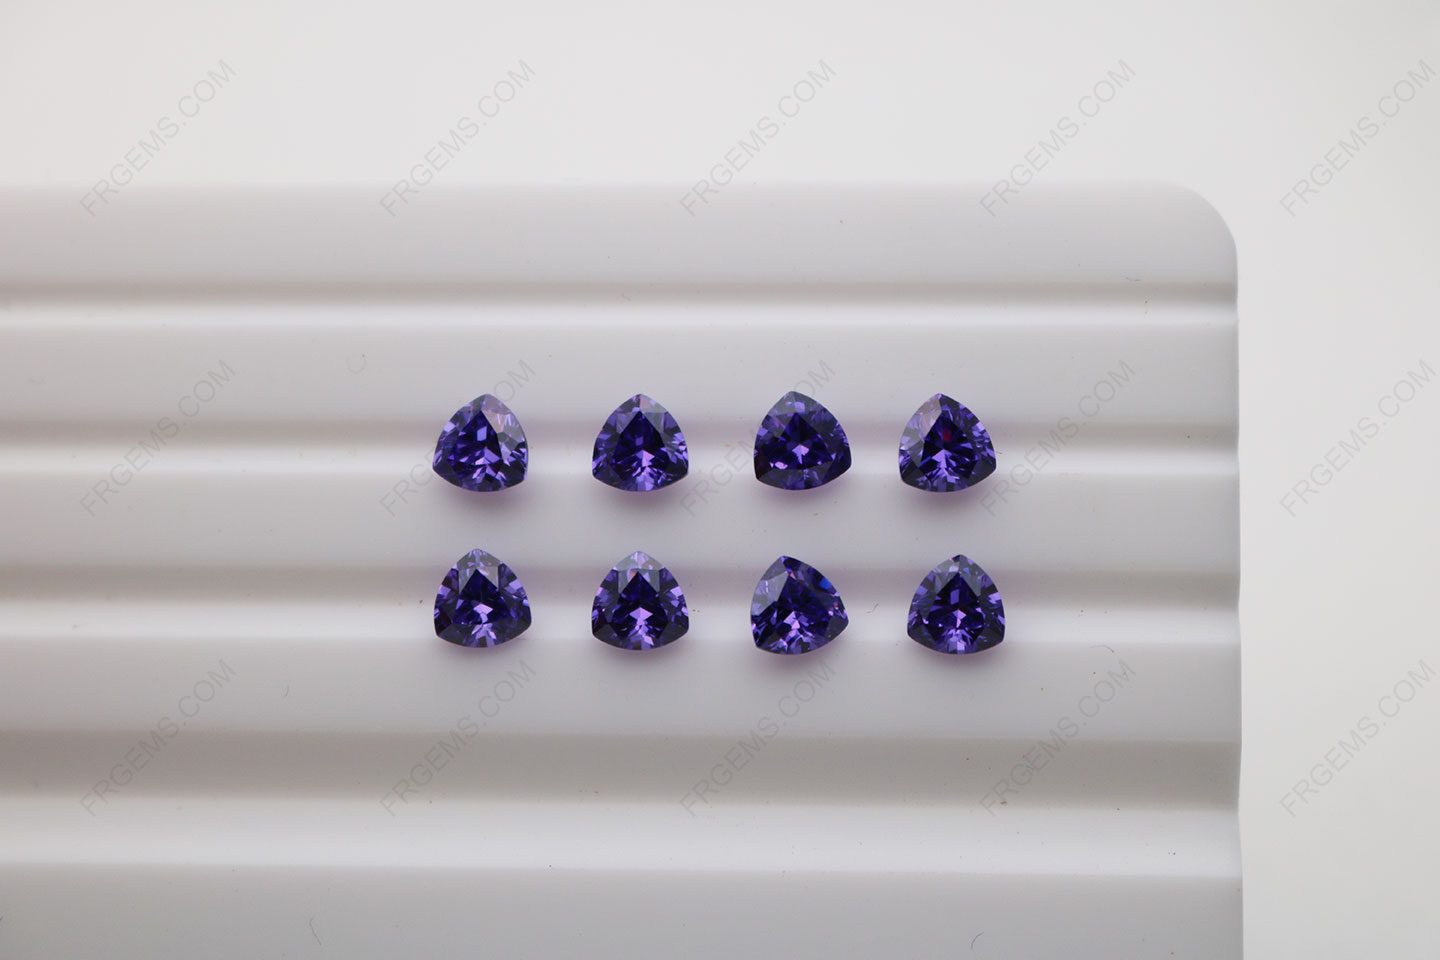 Cubic Zirconia Violet Trillion Shape Diamond faceted cut 5x5mm stones CZ19 IMG_4908